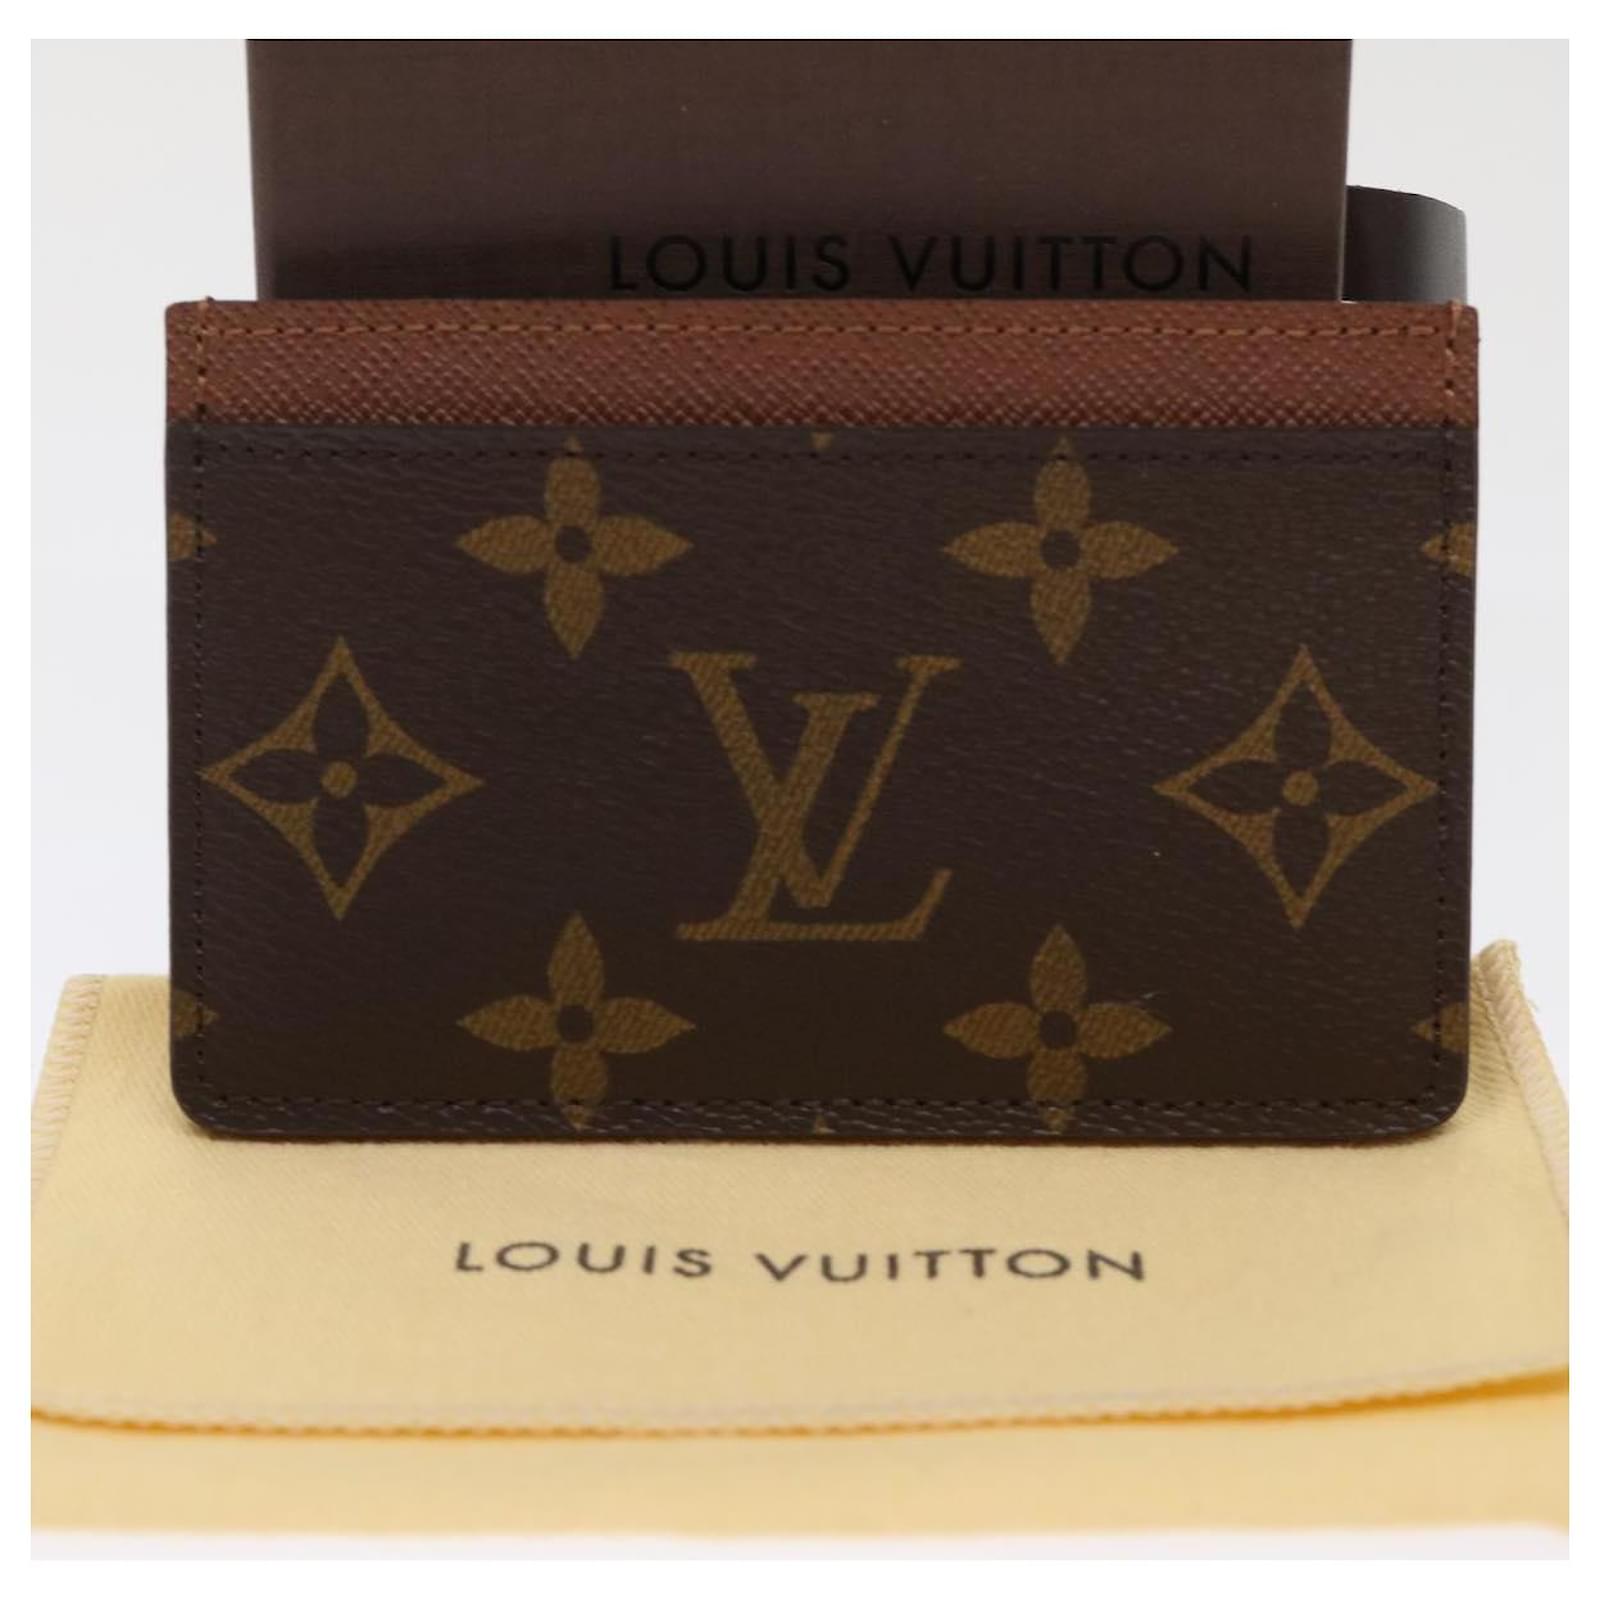 LOUIS VUITTON PORTE CARTES SIMPLE CARD CASE PURSE MONOGRAM M61733